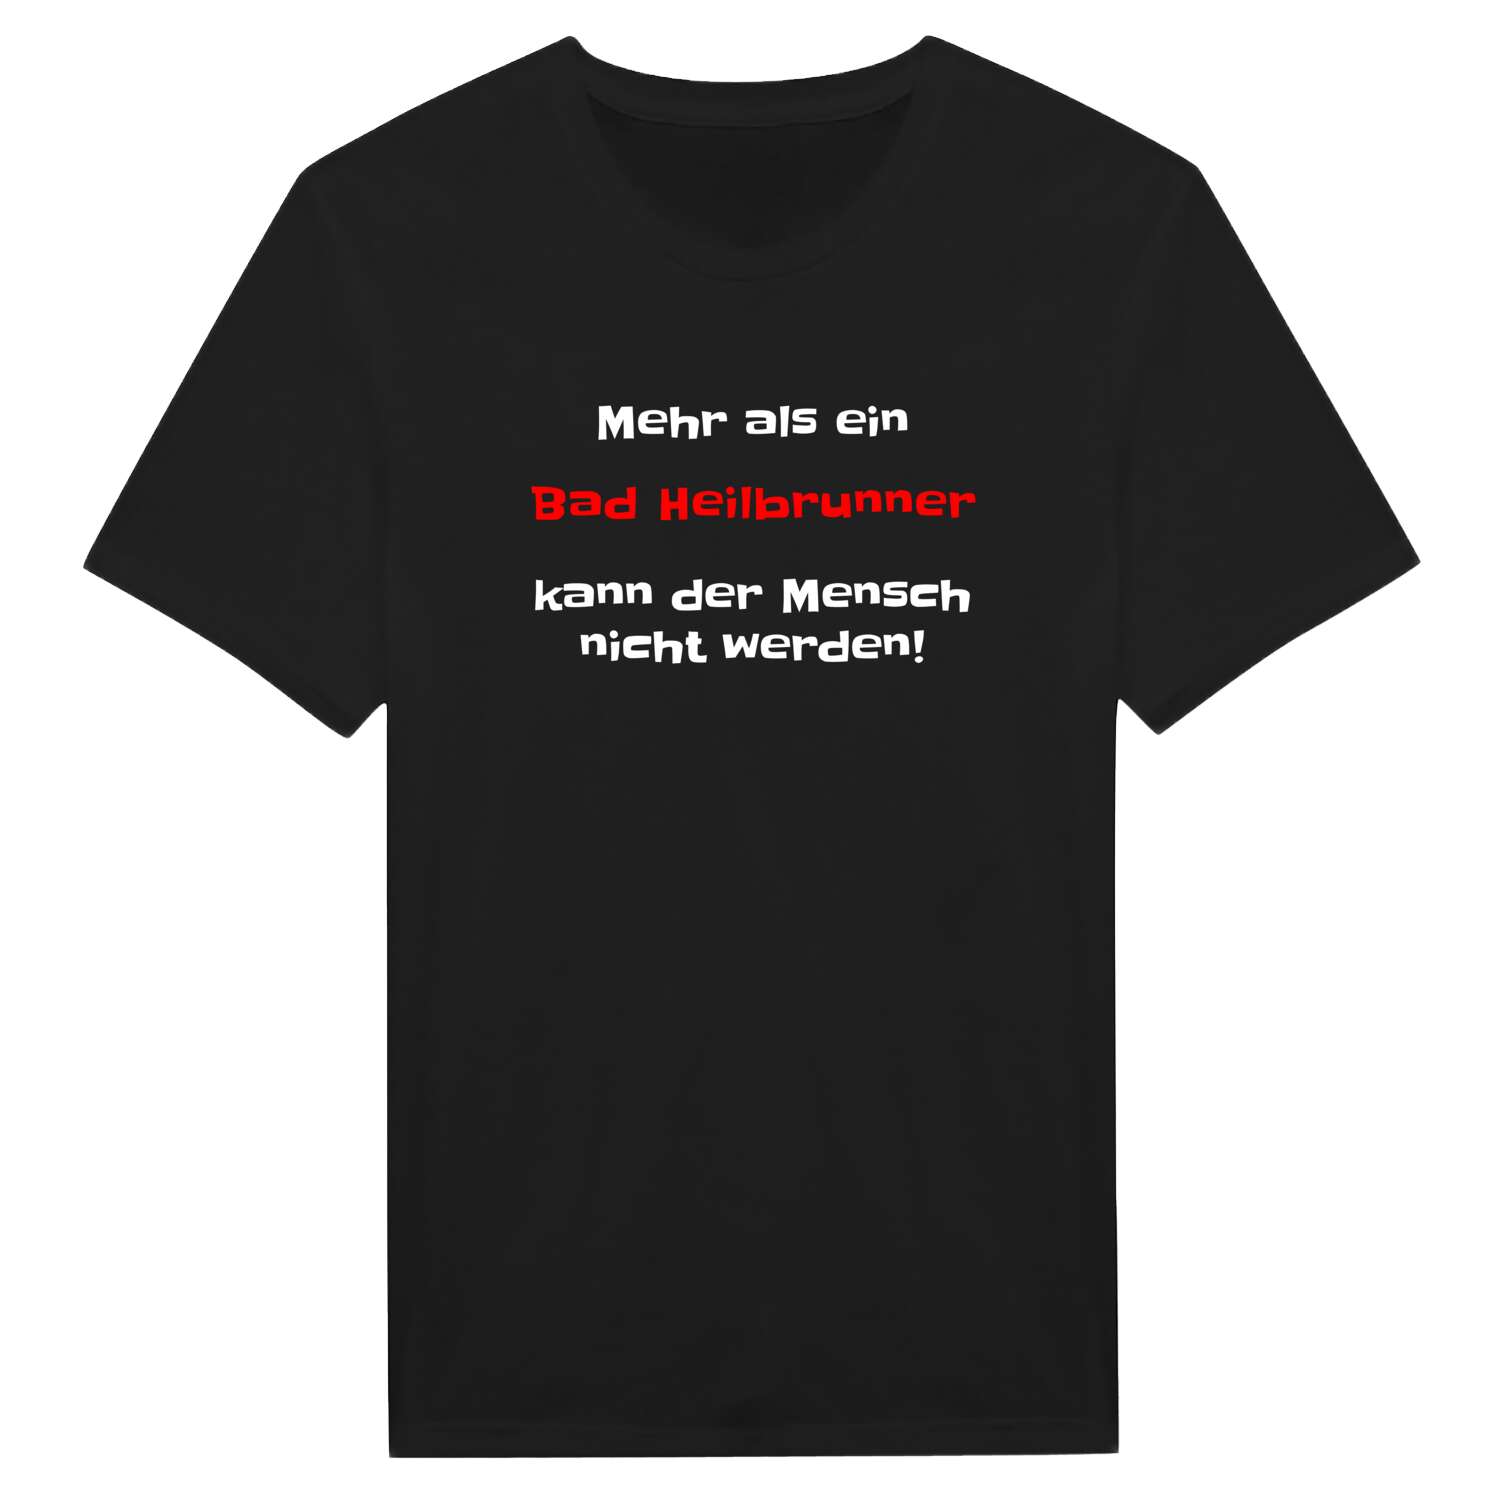 Bad Heilbrunn T-Shirt »Mehr als ein«